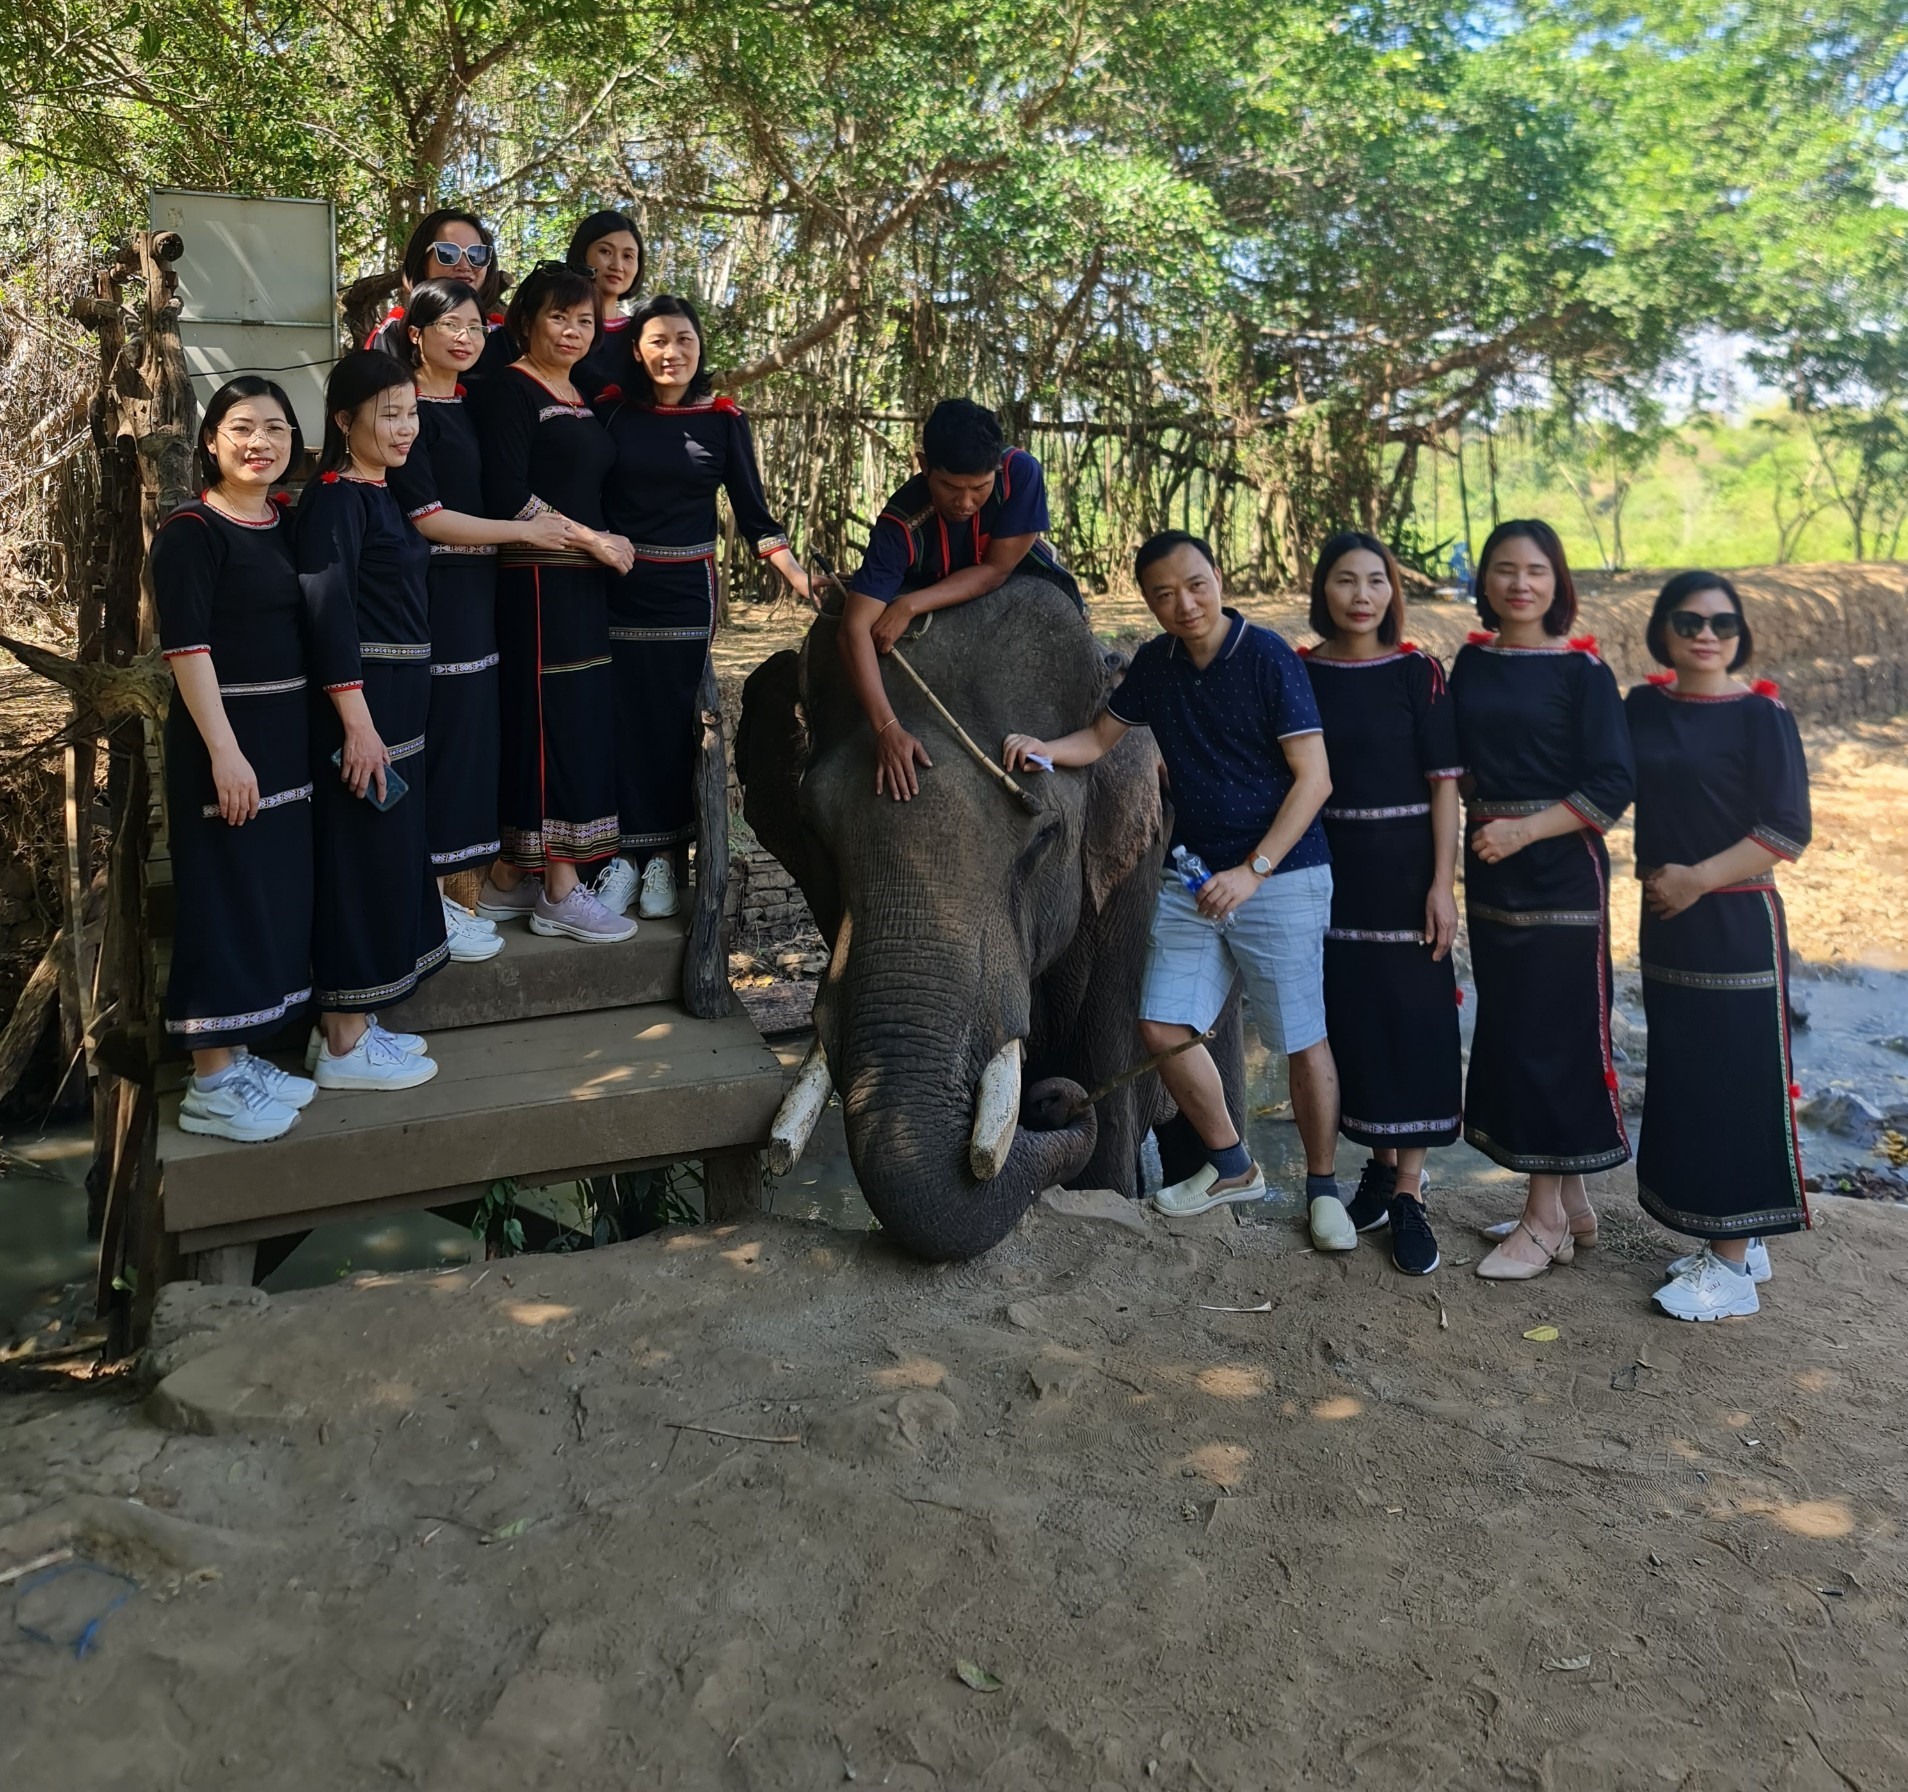 Thay vì cưỡi voi, du khách được thuê trang phục truyền thống của đồng bào dân tộc thiểu số để chơi với voi. Ảnh: Bảo Trung